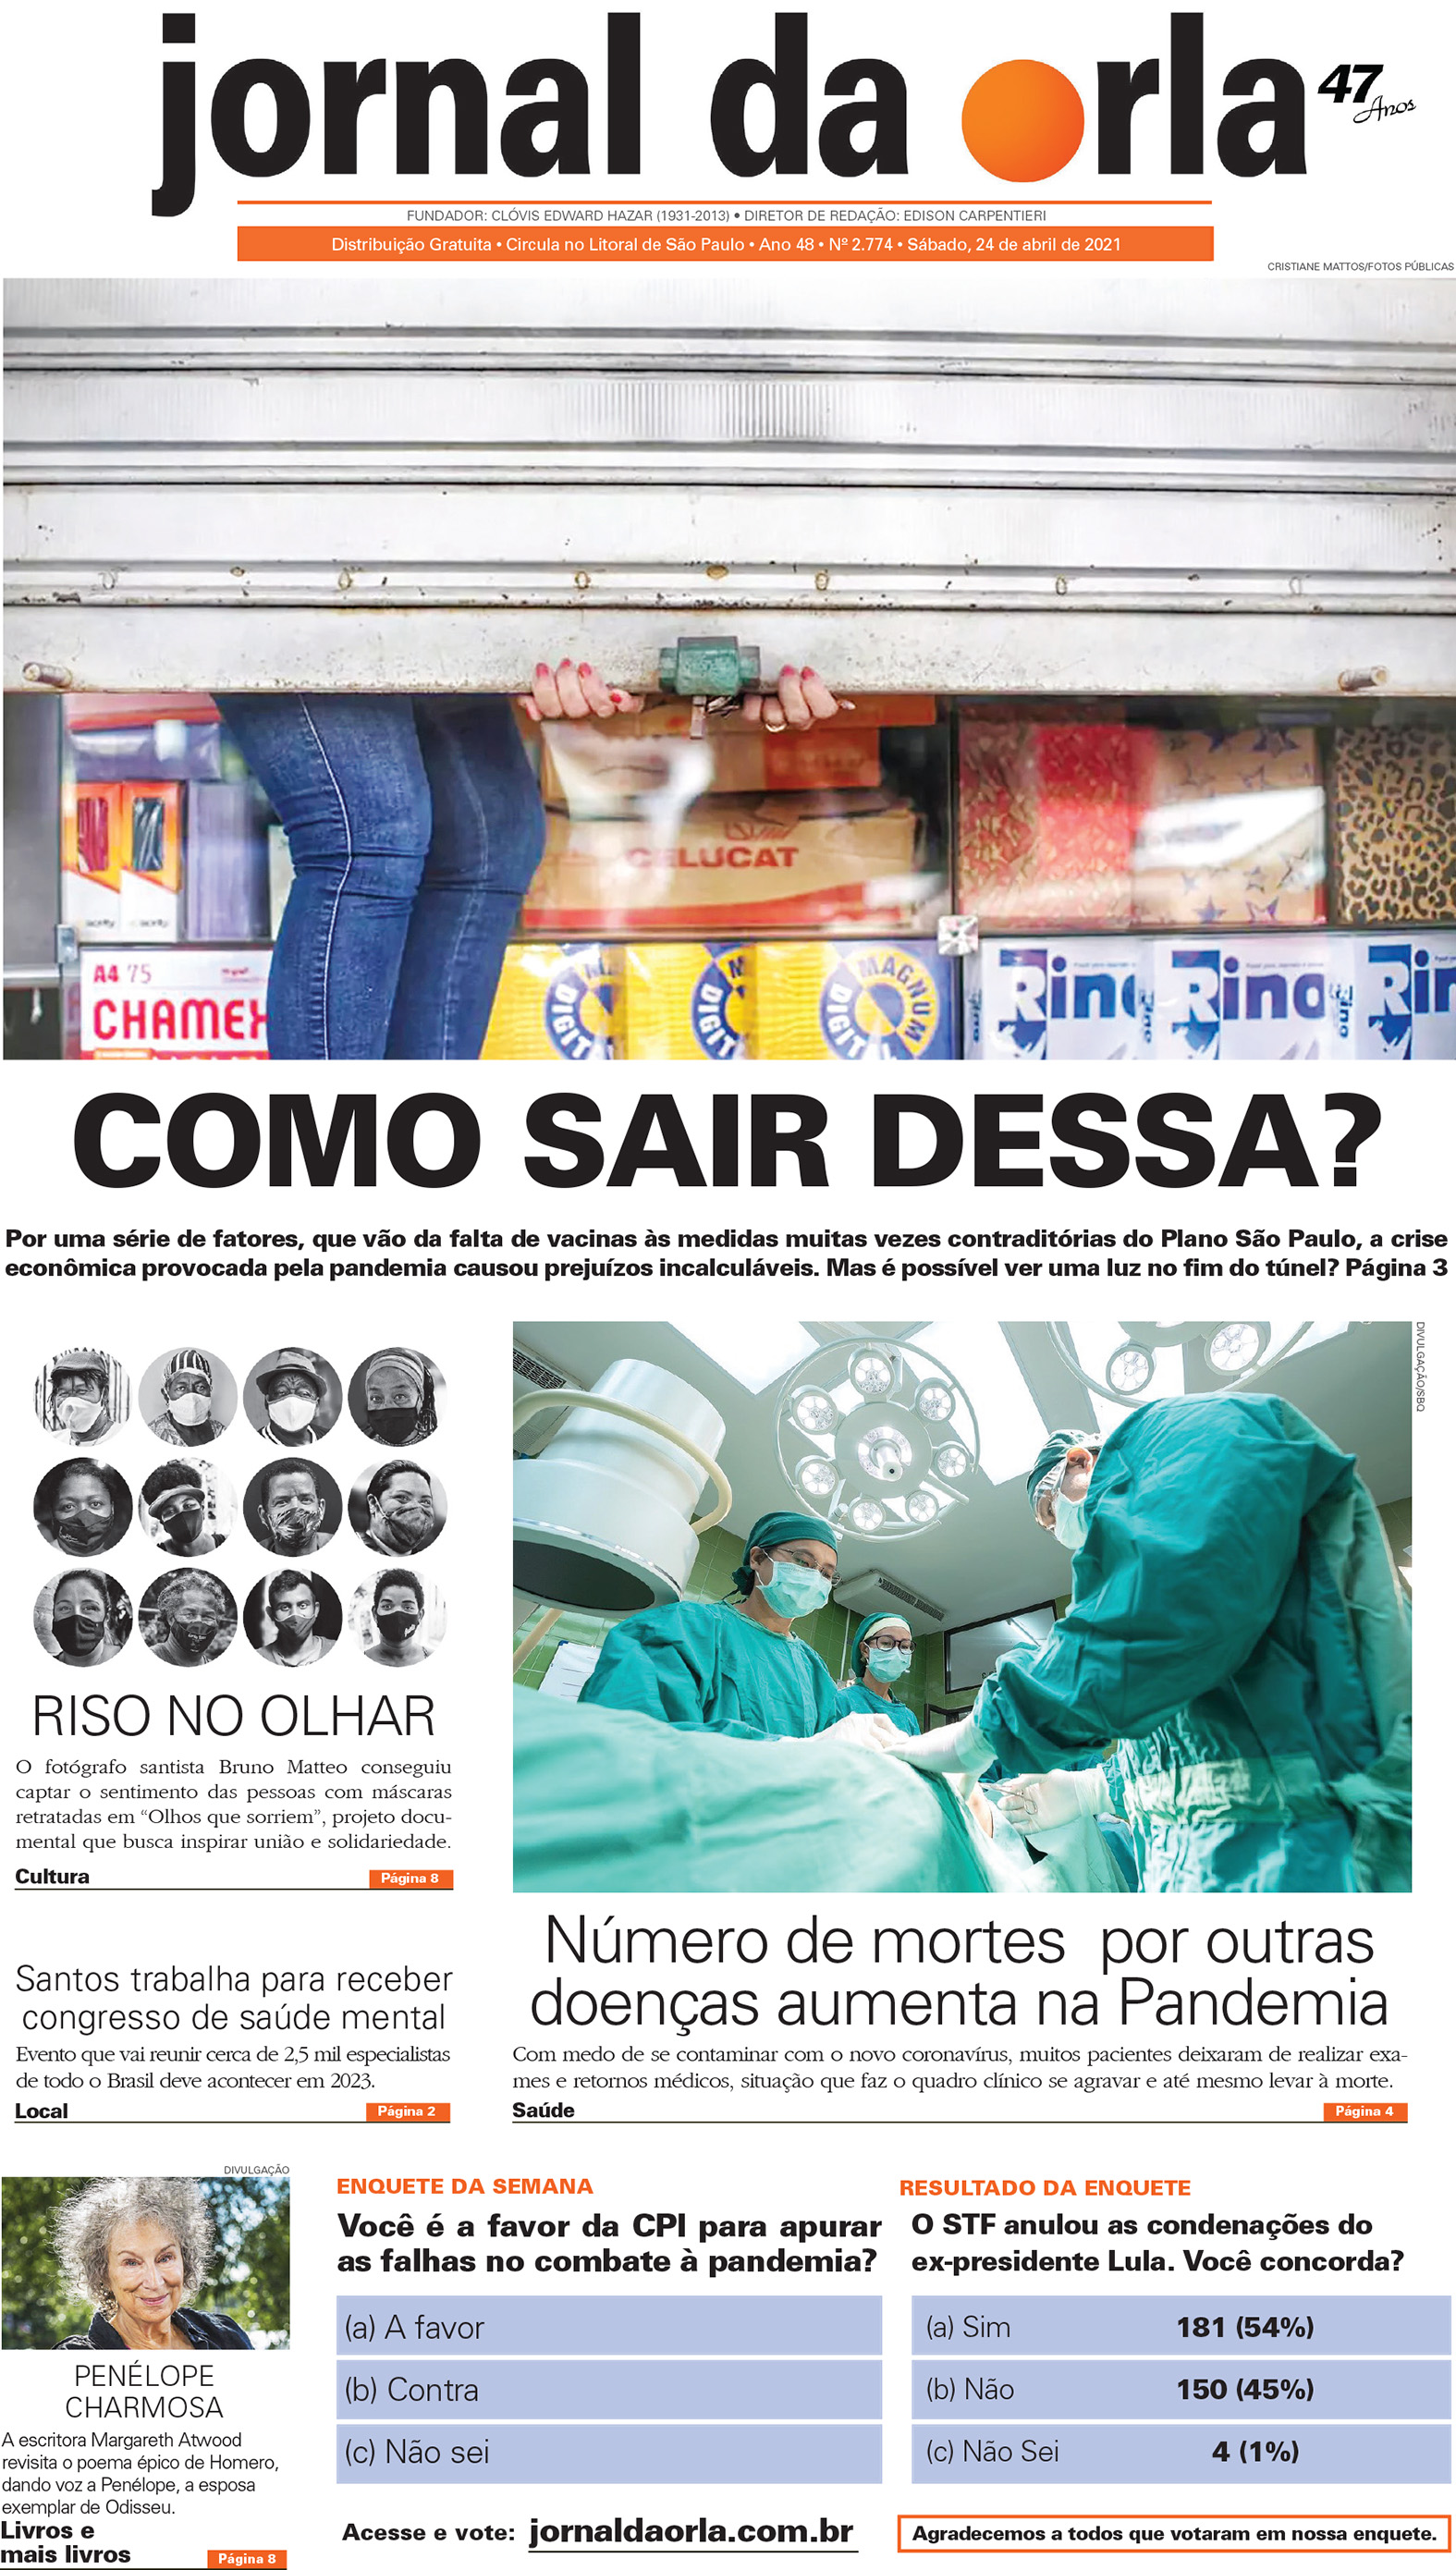 24/04/2021 | Jornal da Orla